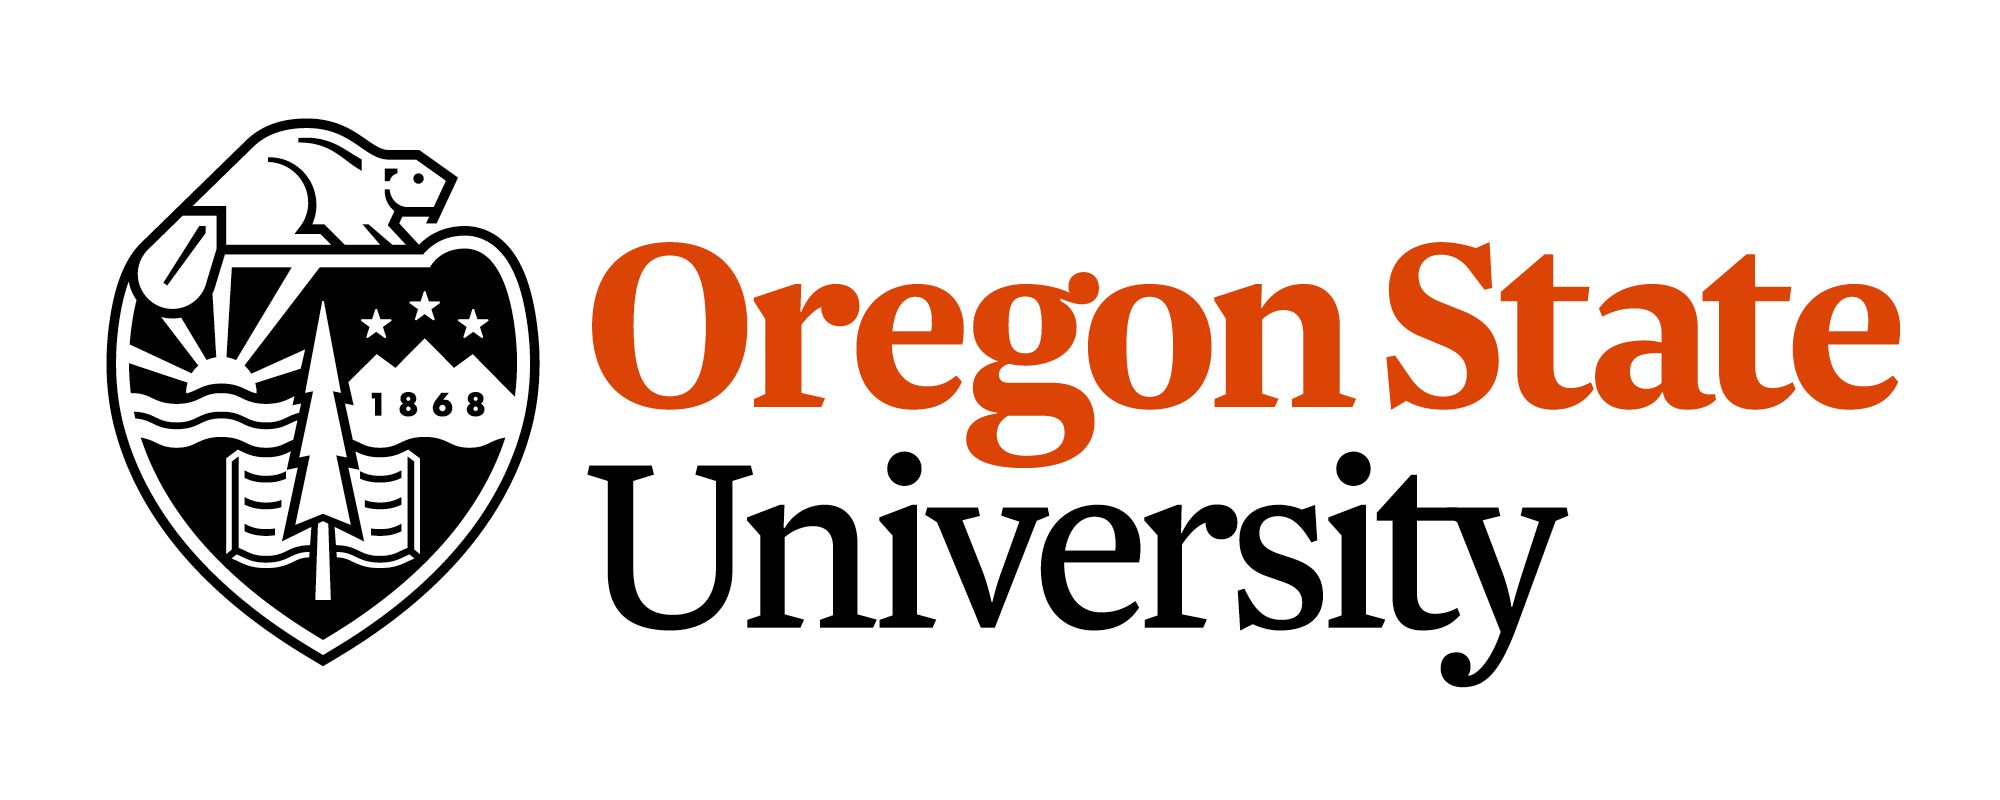 Oregon State University, partenaire scientifique de l'expédition Tara Pacific